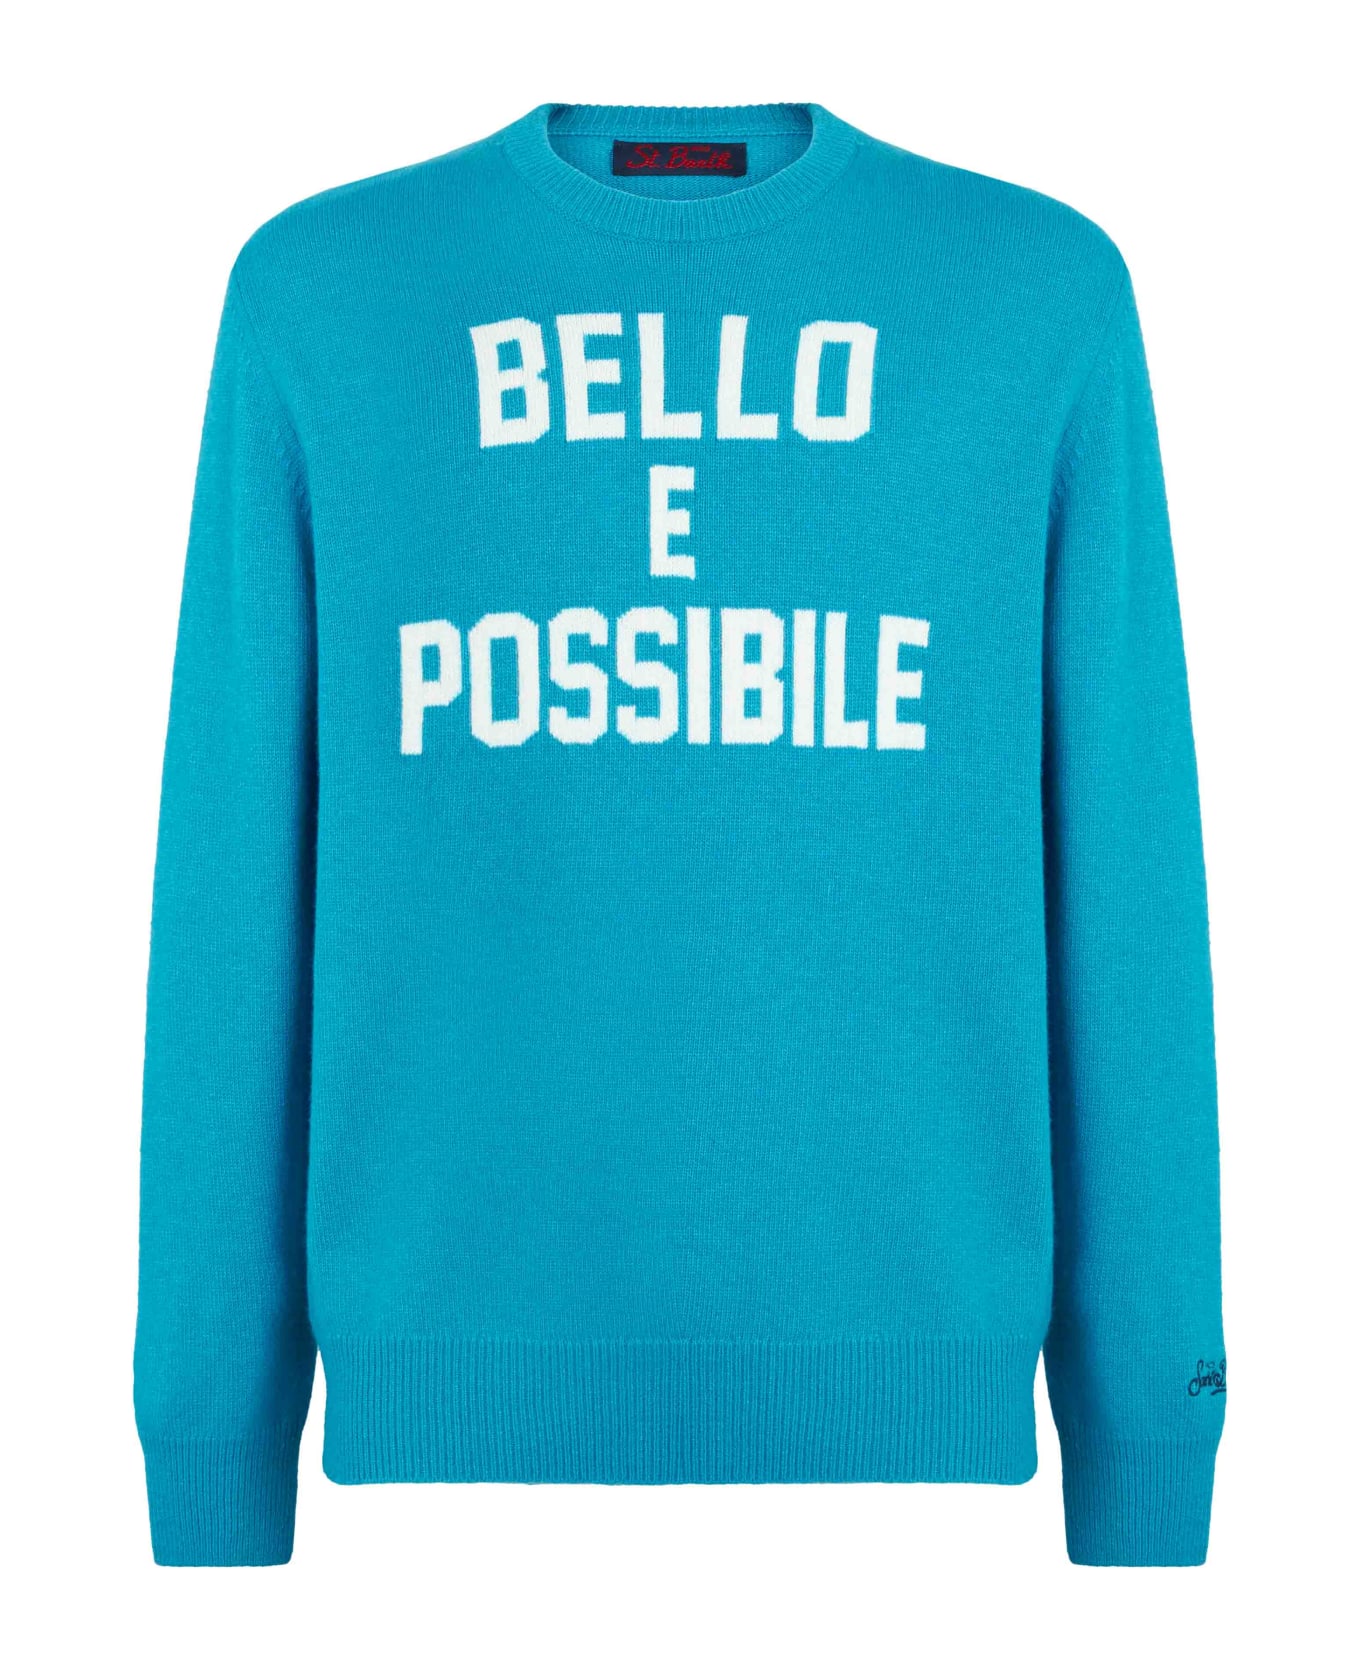 MC2 Saint Barth Man Sweater With Bello E Possibile Print - BLUE